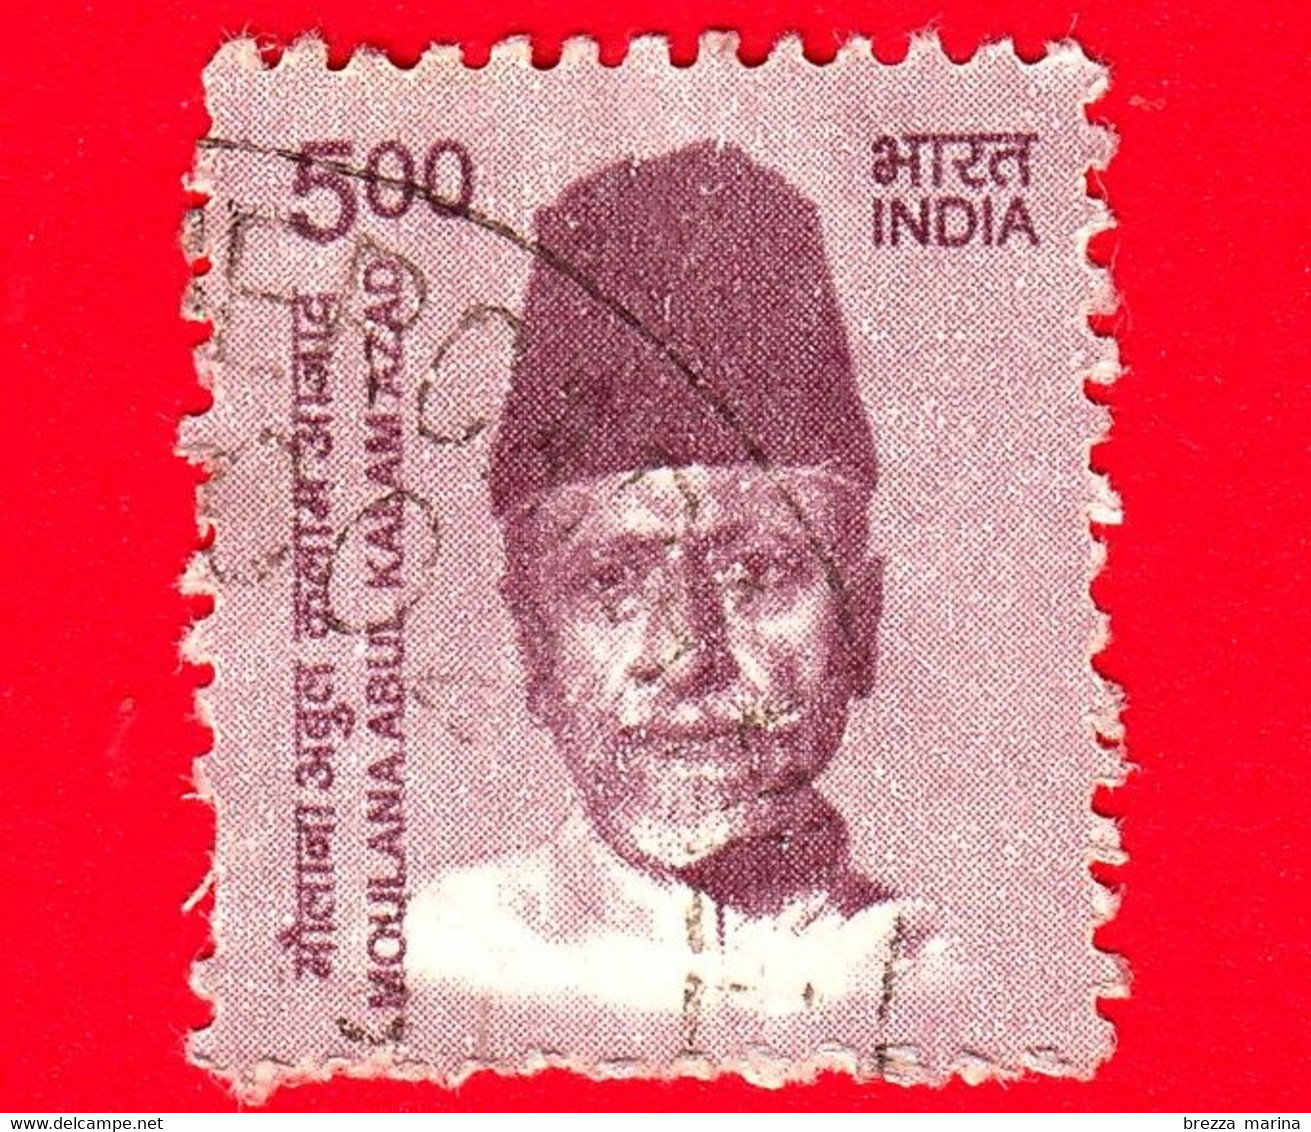 INDIA  - Usato - 2015 - Creatori Dell'India - Moulana Abul Kalam Azad (1888-1958), Politico E Scrittore - 5 - Used Stamps